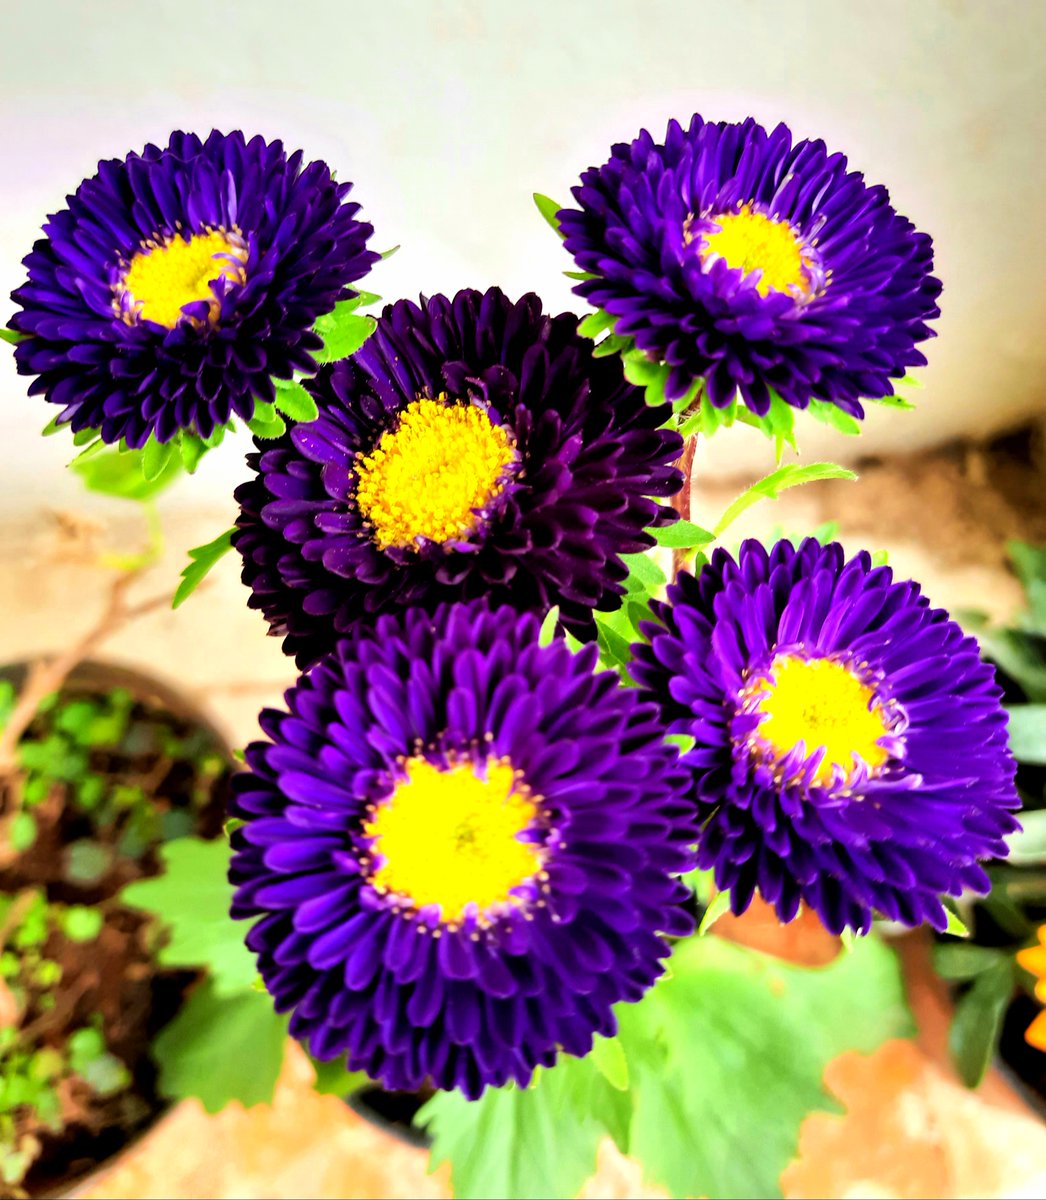 #flowersonfriday Photo,#flowersonfriday Photo by Kiran Tripathi,Kiran Tripathi on twitter tweets #flowersonfriday Photo